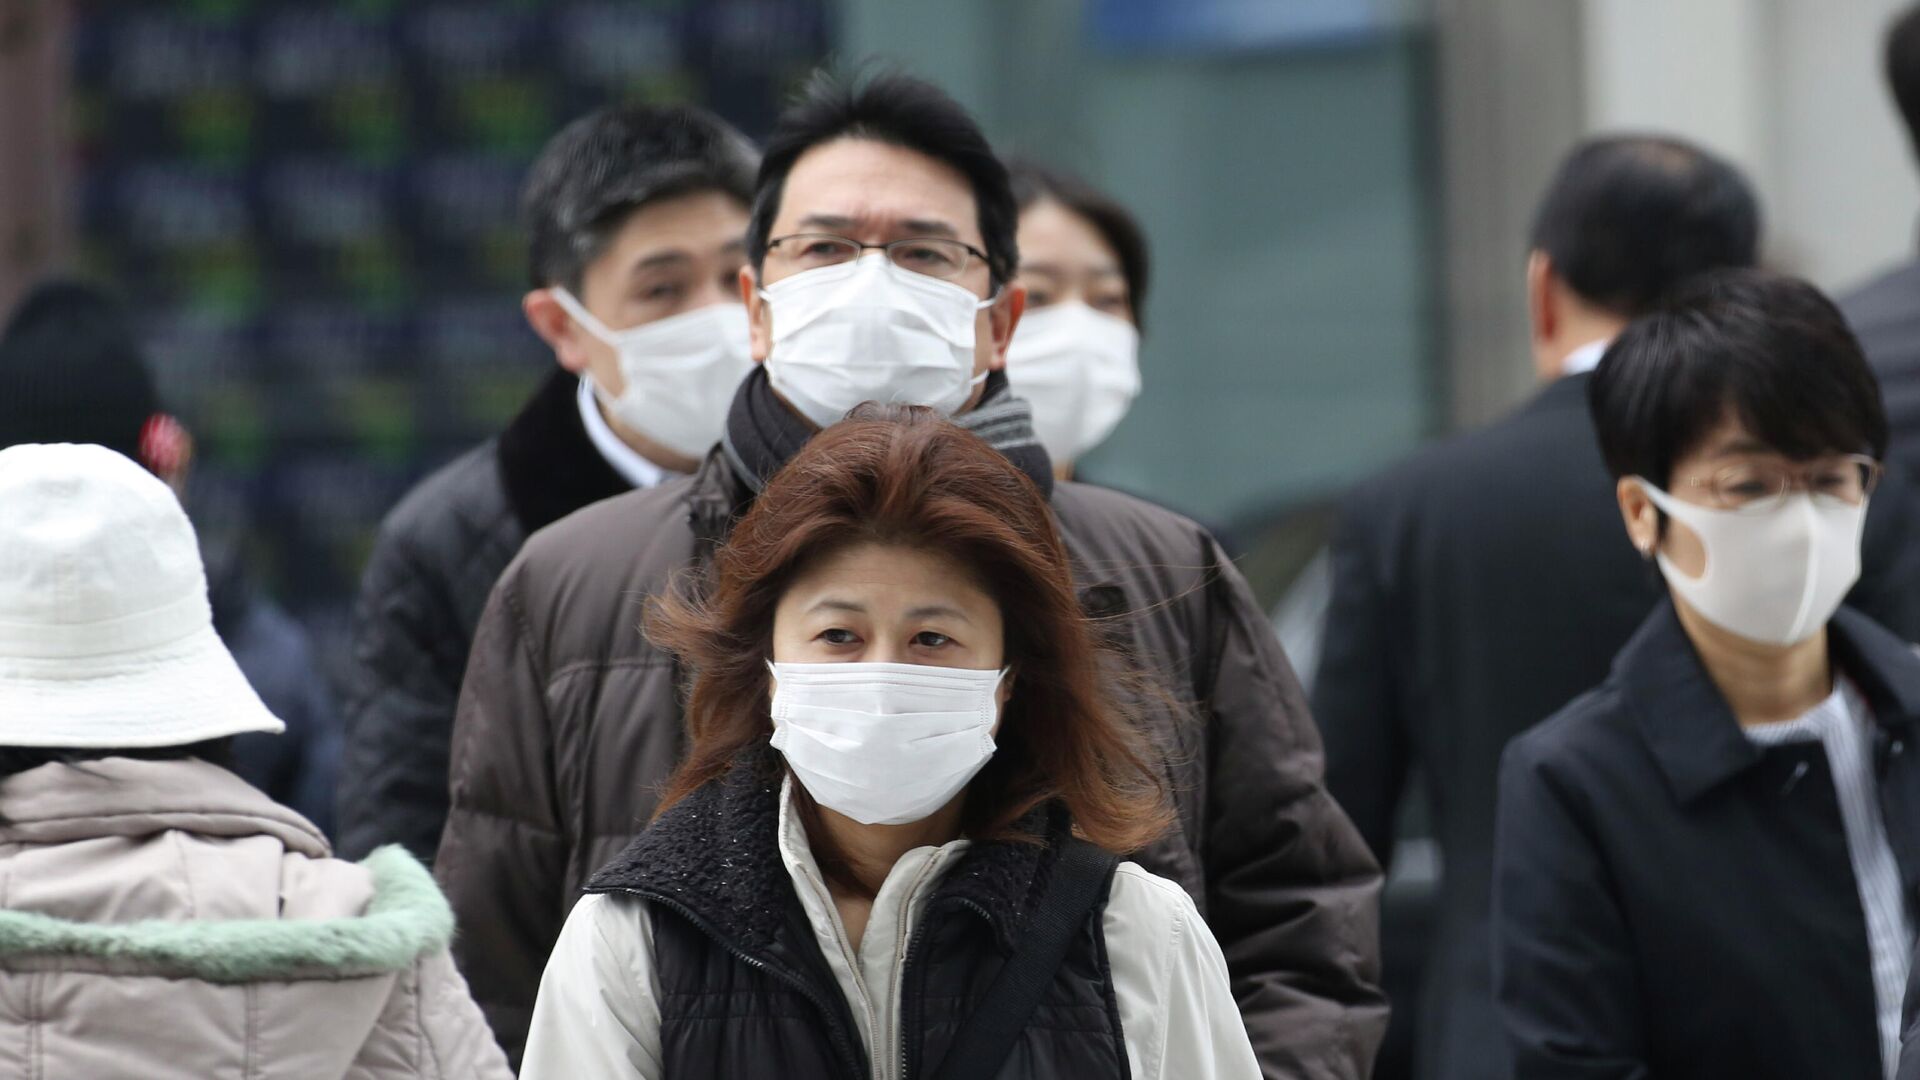 Прохожие в защитных масках на улице Токио, Япония. 17 февраля 2020 - РИА Новости, 1920, 18.10.2020